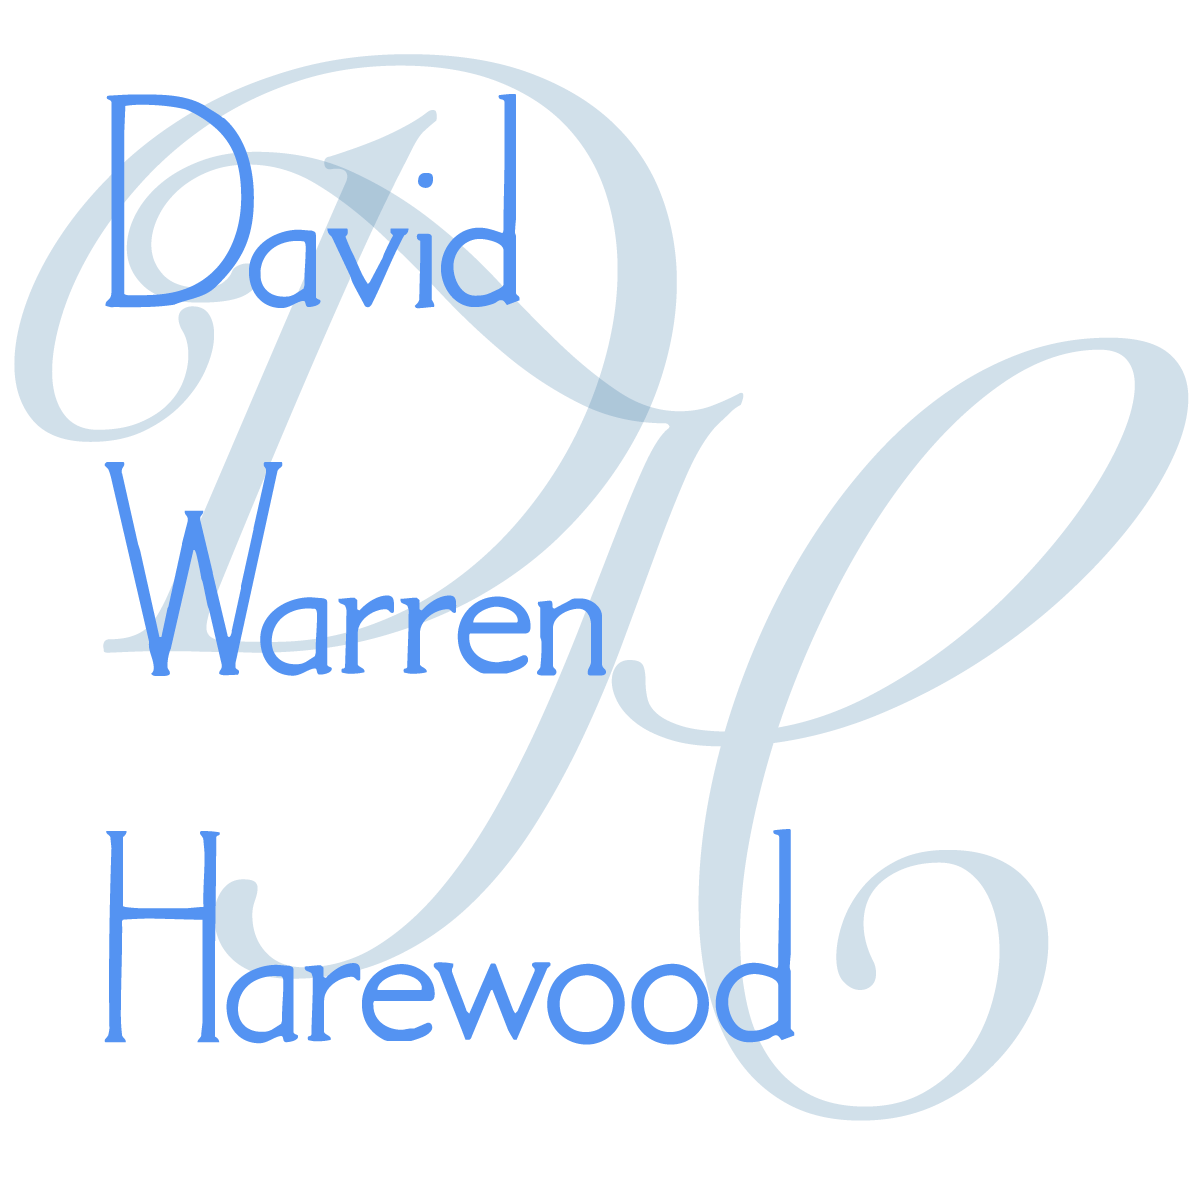 David Warren Harewood